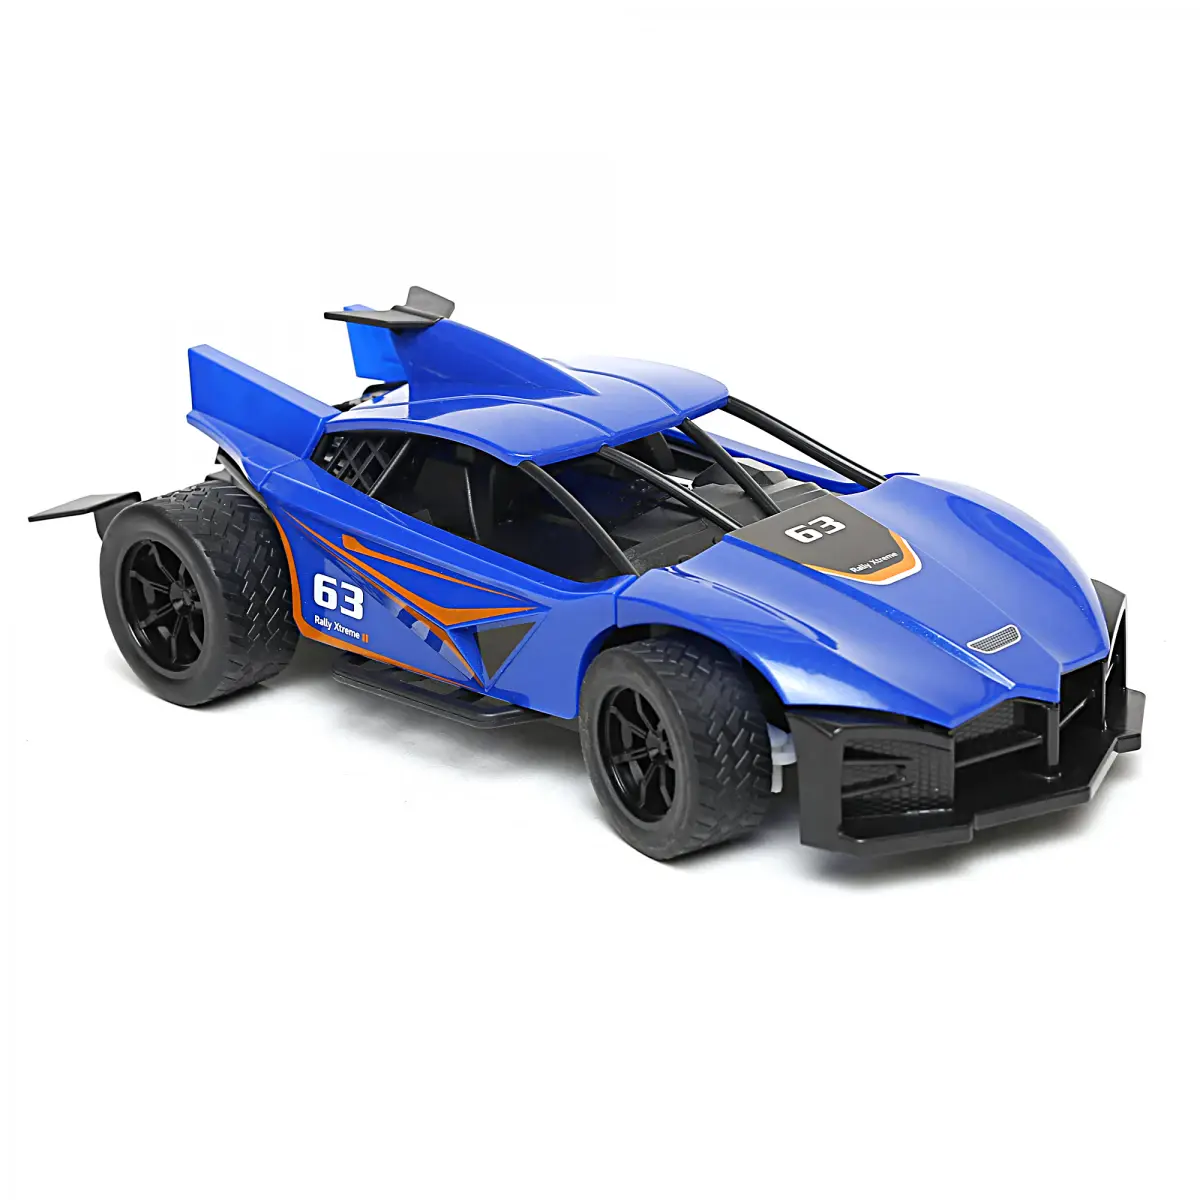 Ralleyz Vapour Spray Racing Remote Control Car, 6Y+, Blue 